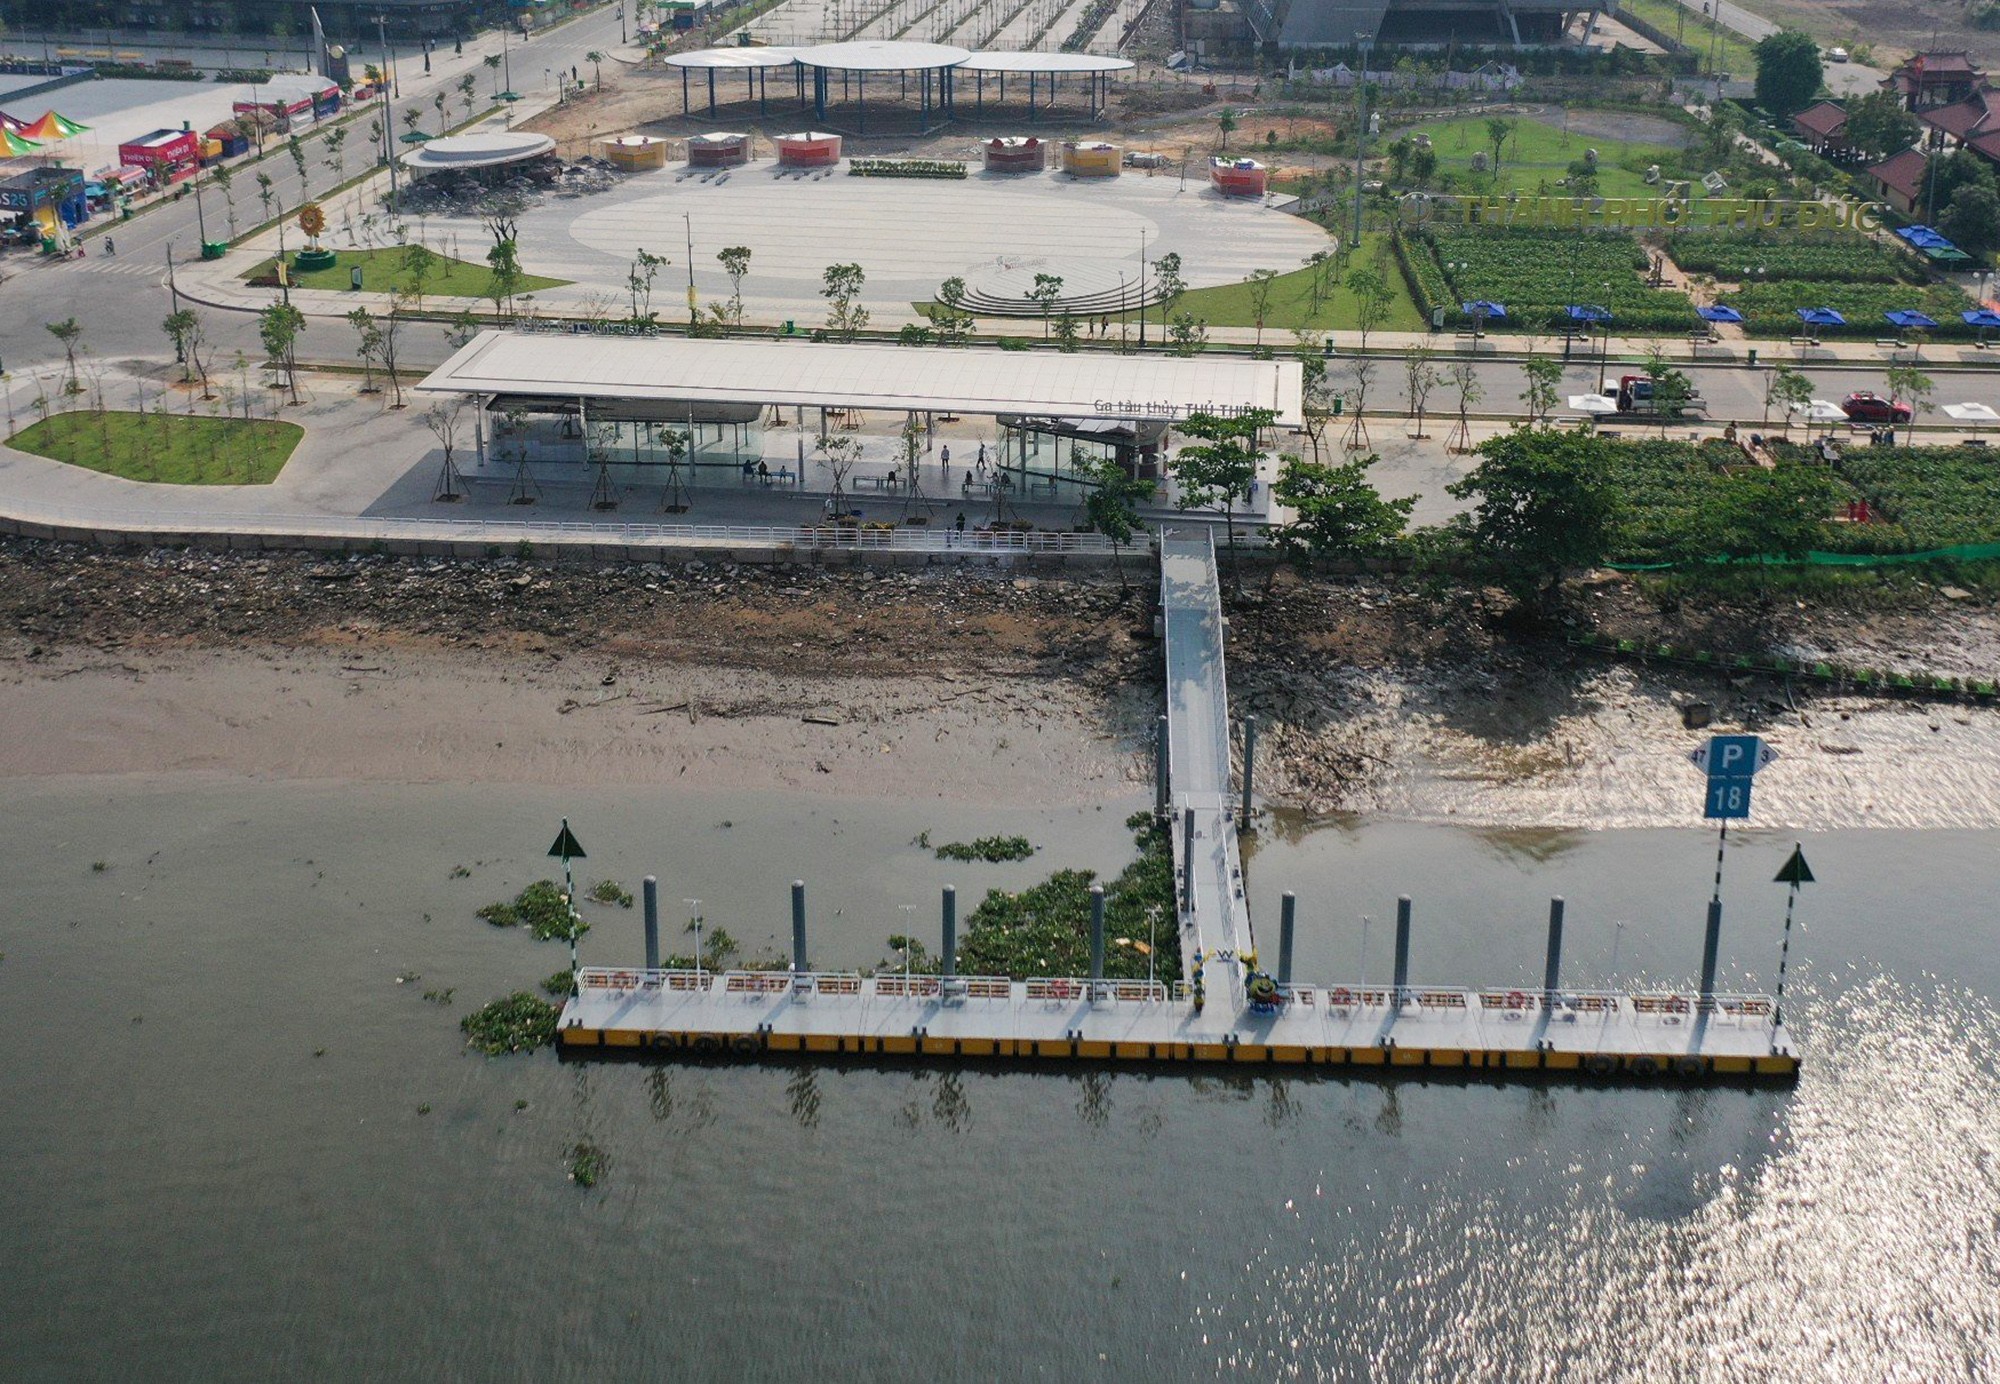 Bến tàu thuỷ Thủ Thiêm trong công viên gần như đã hoàn thiện, sẵn sàng đưa vào hoạt động. Cầu tàu là một hướng tiếp cận khác cho người dân và du khách đến tham quan, vui chơi tại công viên bờ sông Sài Gòn.